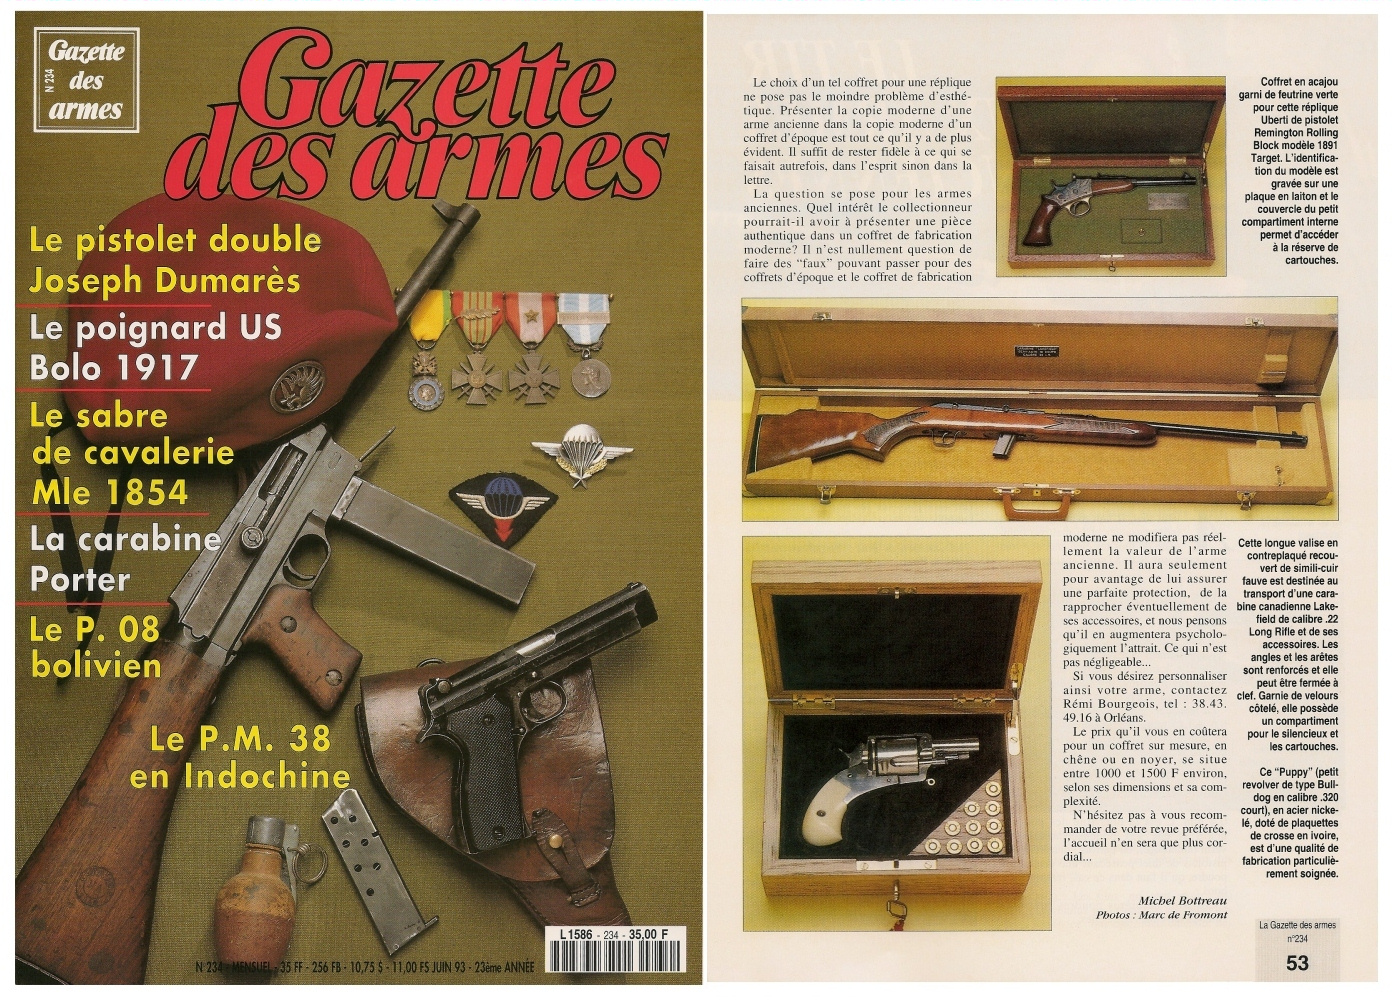 Ce reportage consacré aux coffrets sur mesure a été publié sur 4 pages dans le magazine Gazette des Armes n°234 (juin 1993).